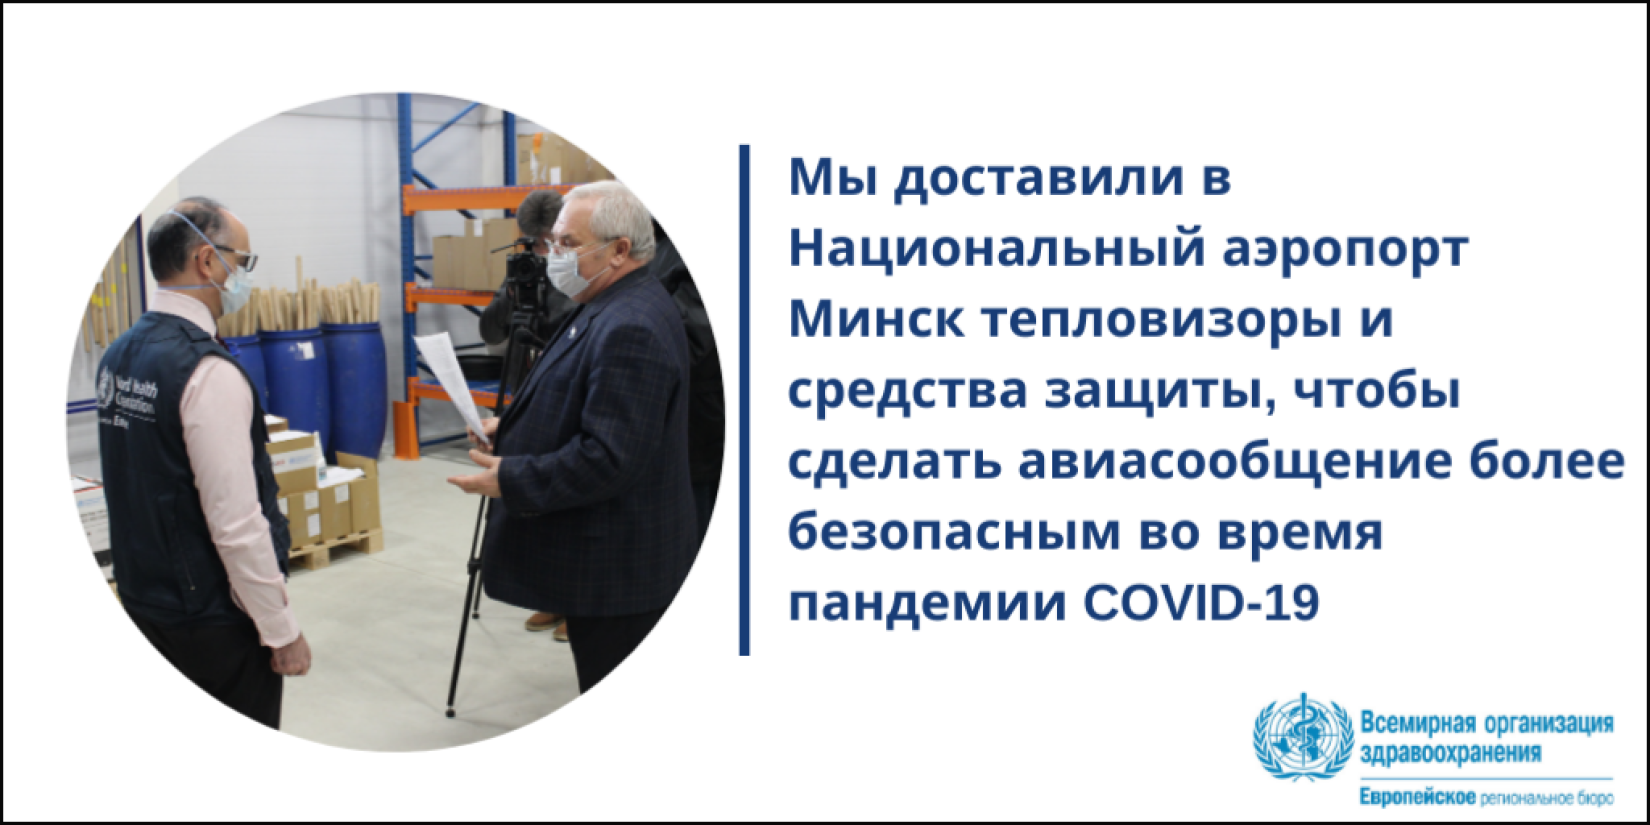 ВОЗ при поддержке USAID поставил в Национальный аэропорт Минск тепловизоры и средства защиты от COVID-19